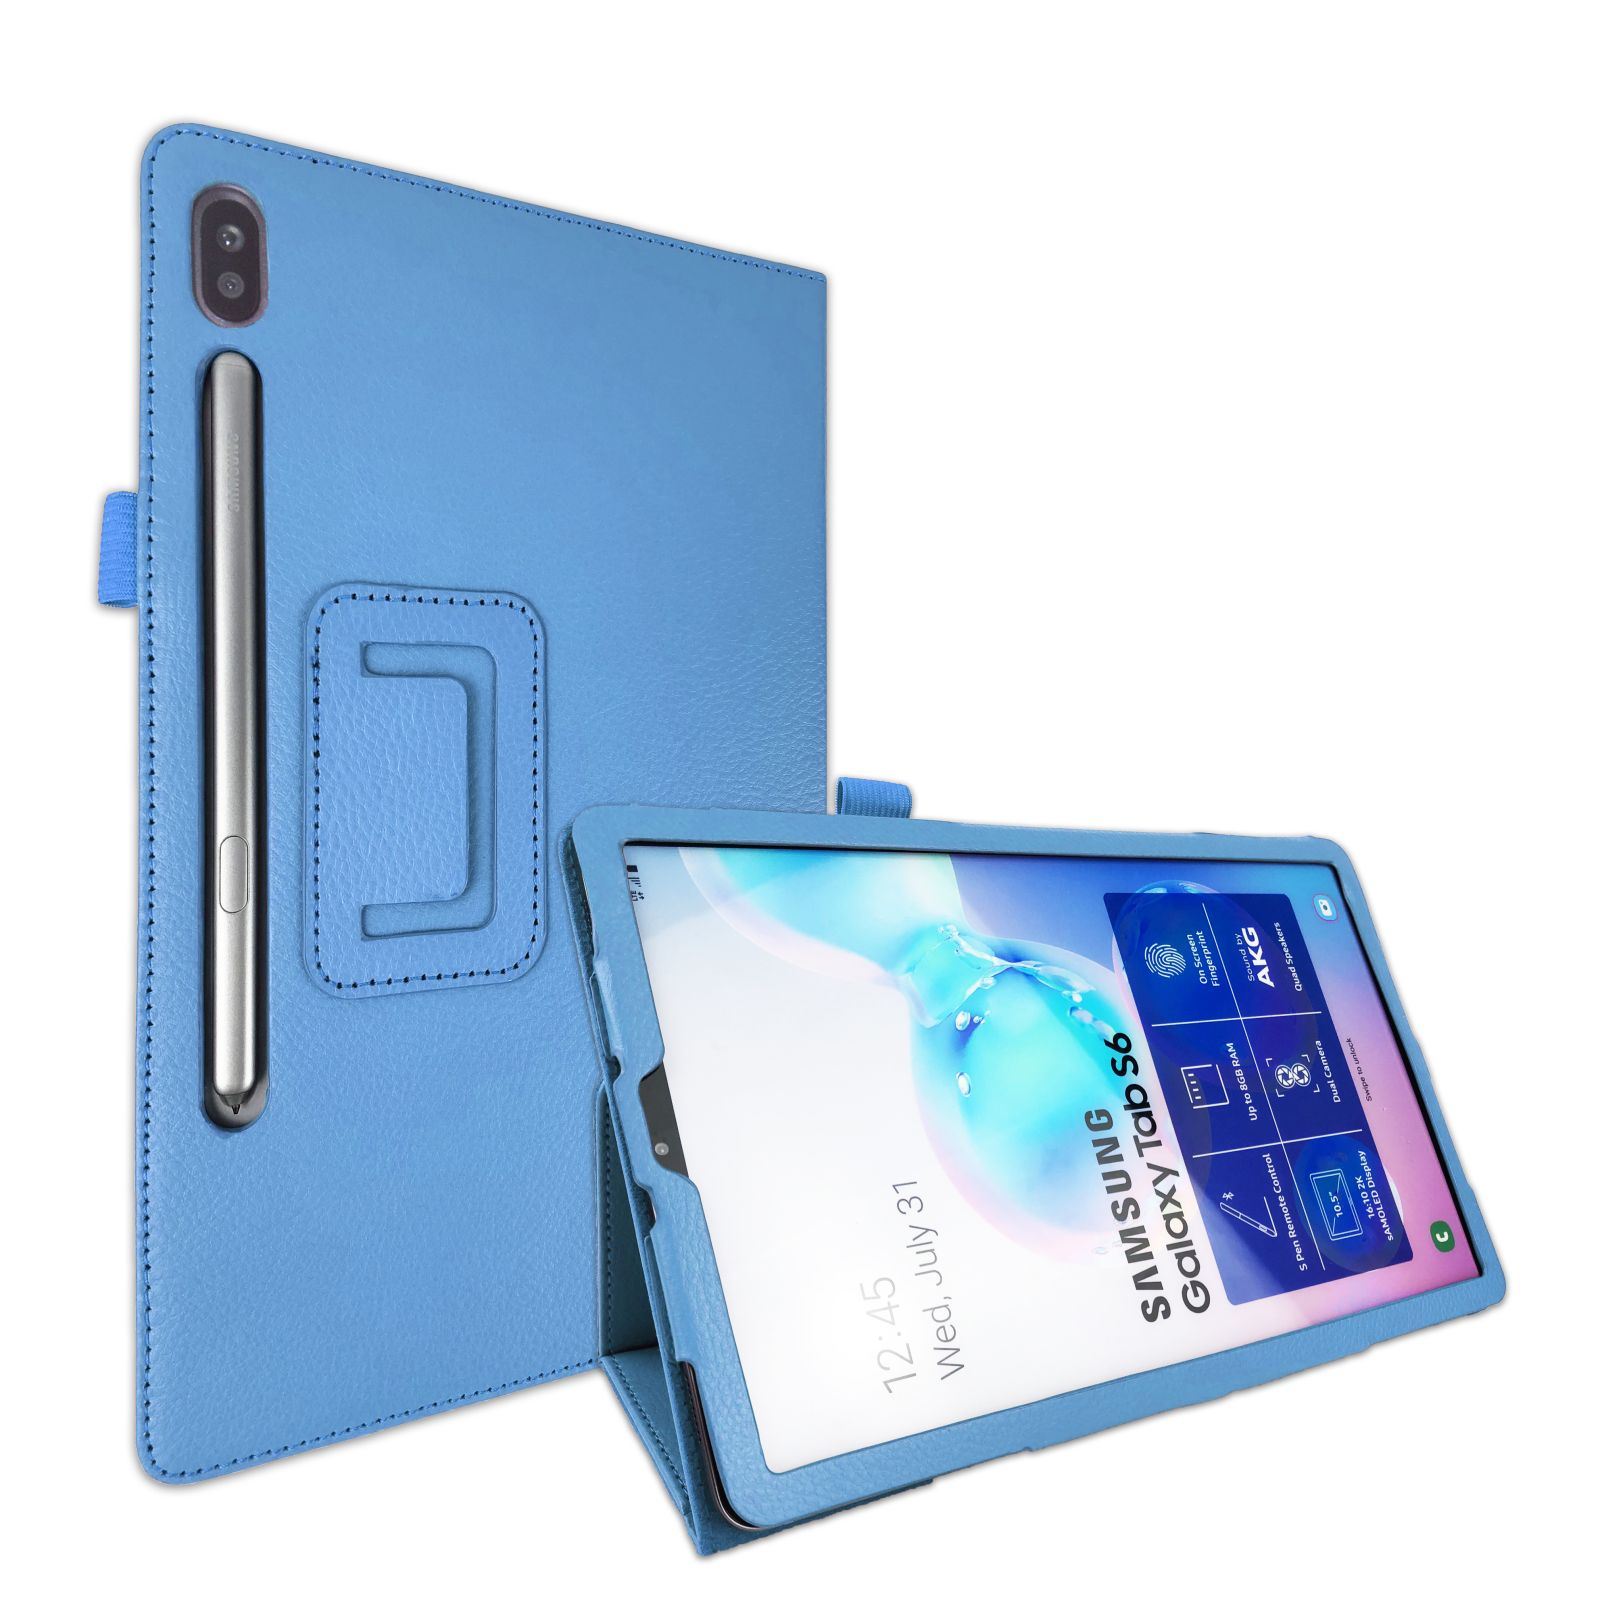 LOBWERK Hülle Schutzhülle Bookcover Galaxy Hellblau S6 Tab 10.5 Zoll für SM-T860 Samsung Kunstleder